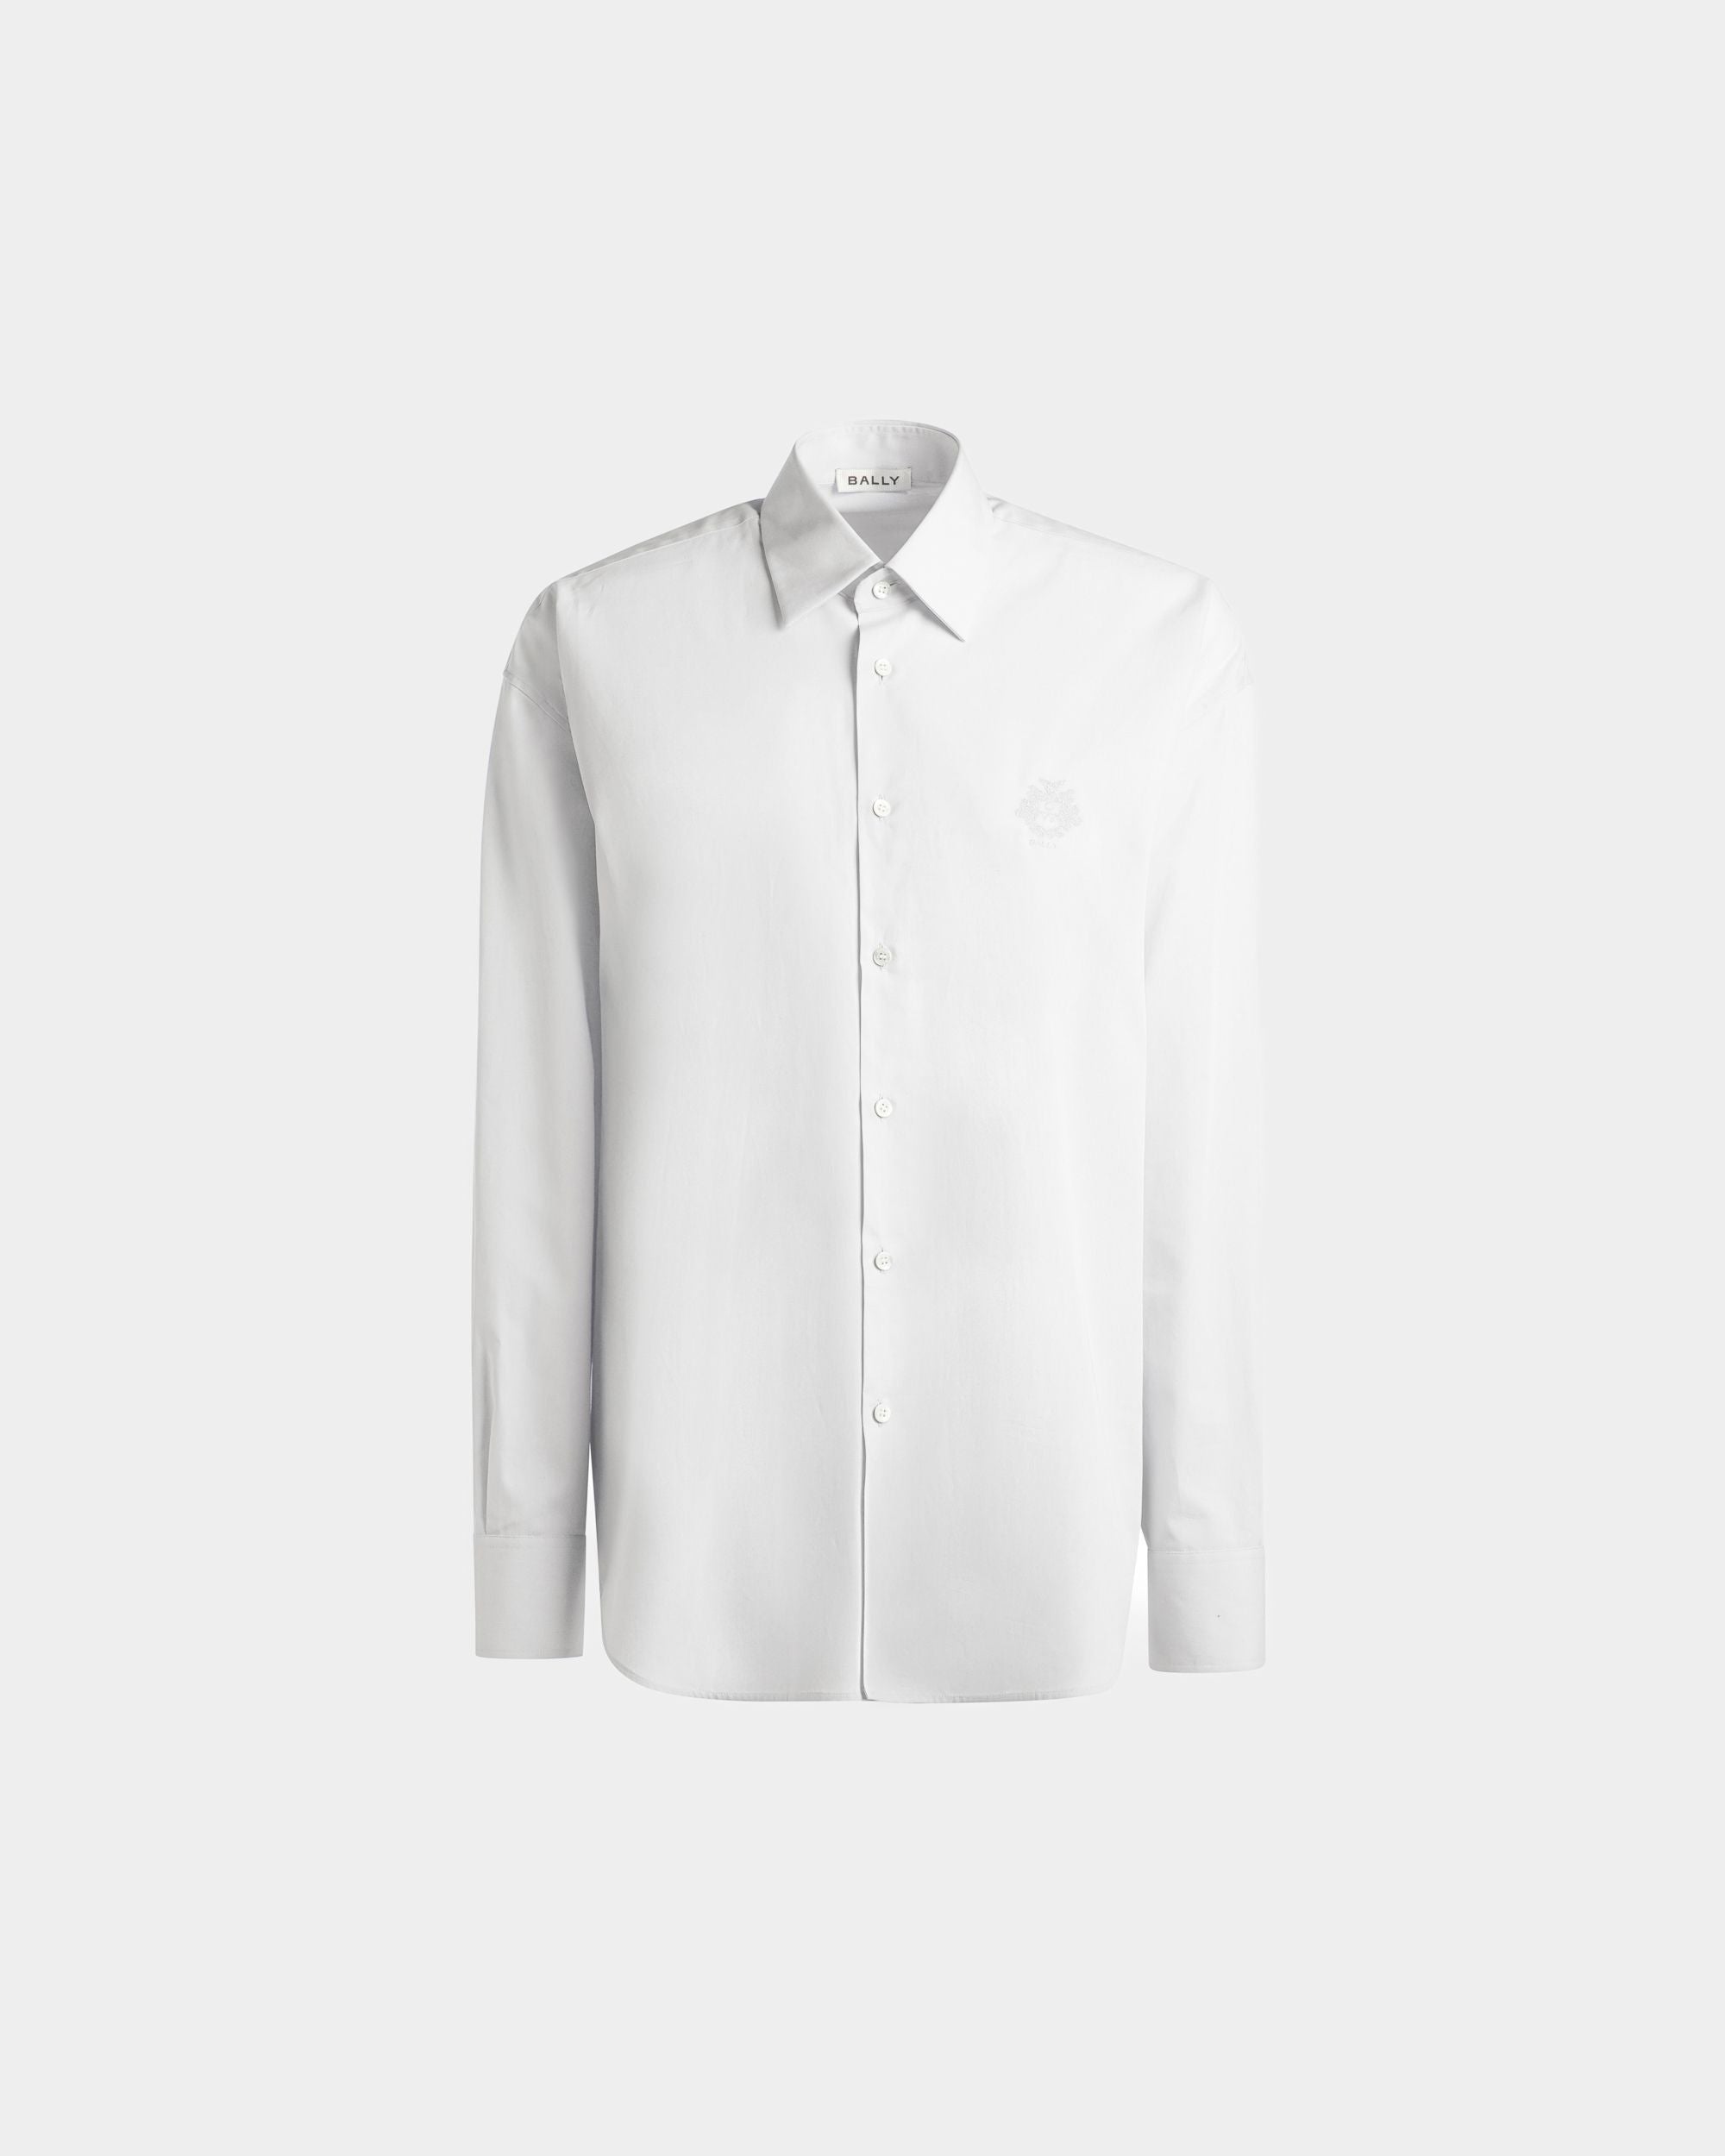 Camicia da uomo in cotone bianco | Bally | Still Life Fronte